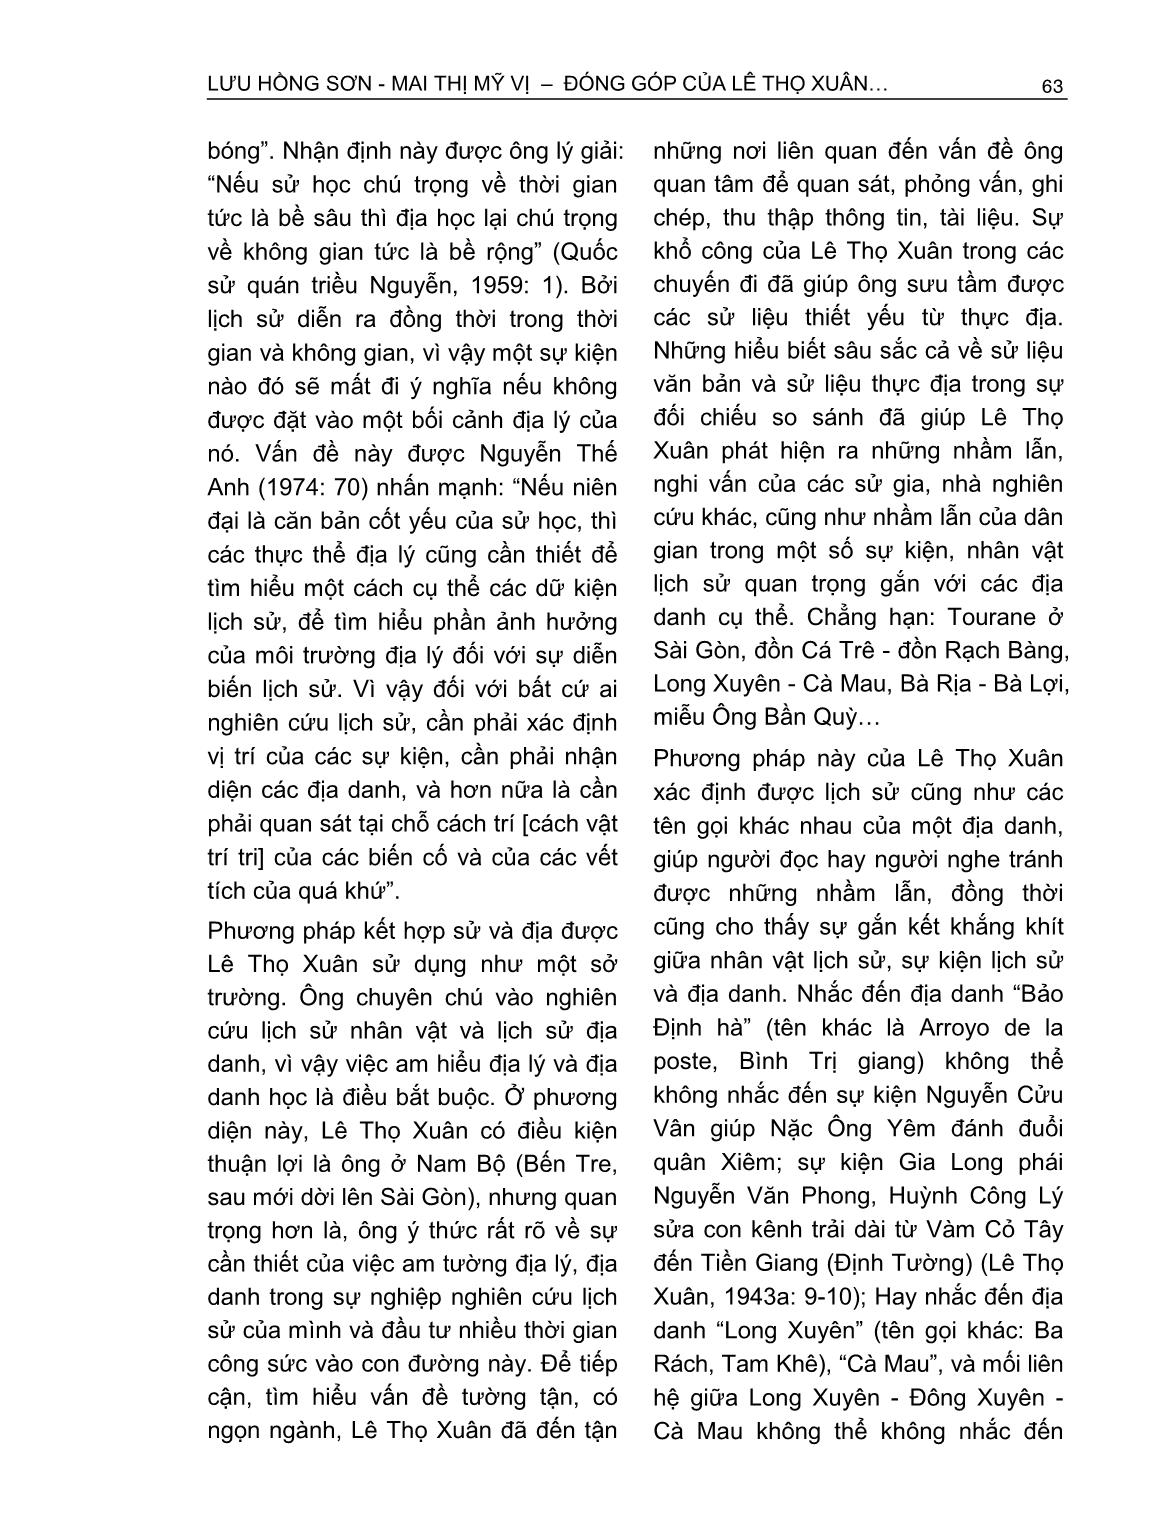 Đóng góp của Lê Thọ Xuân trong nghiên cứu lịch sử Nam Bộ triều Nguyễn thế kỷ XIX trang 4